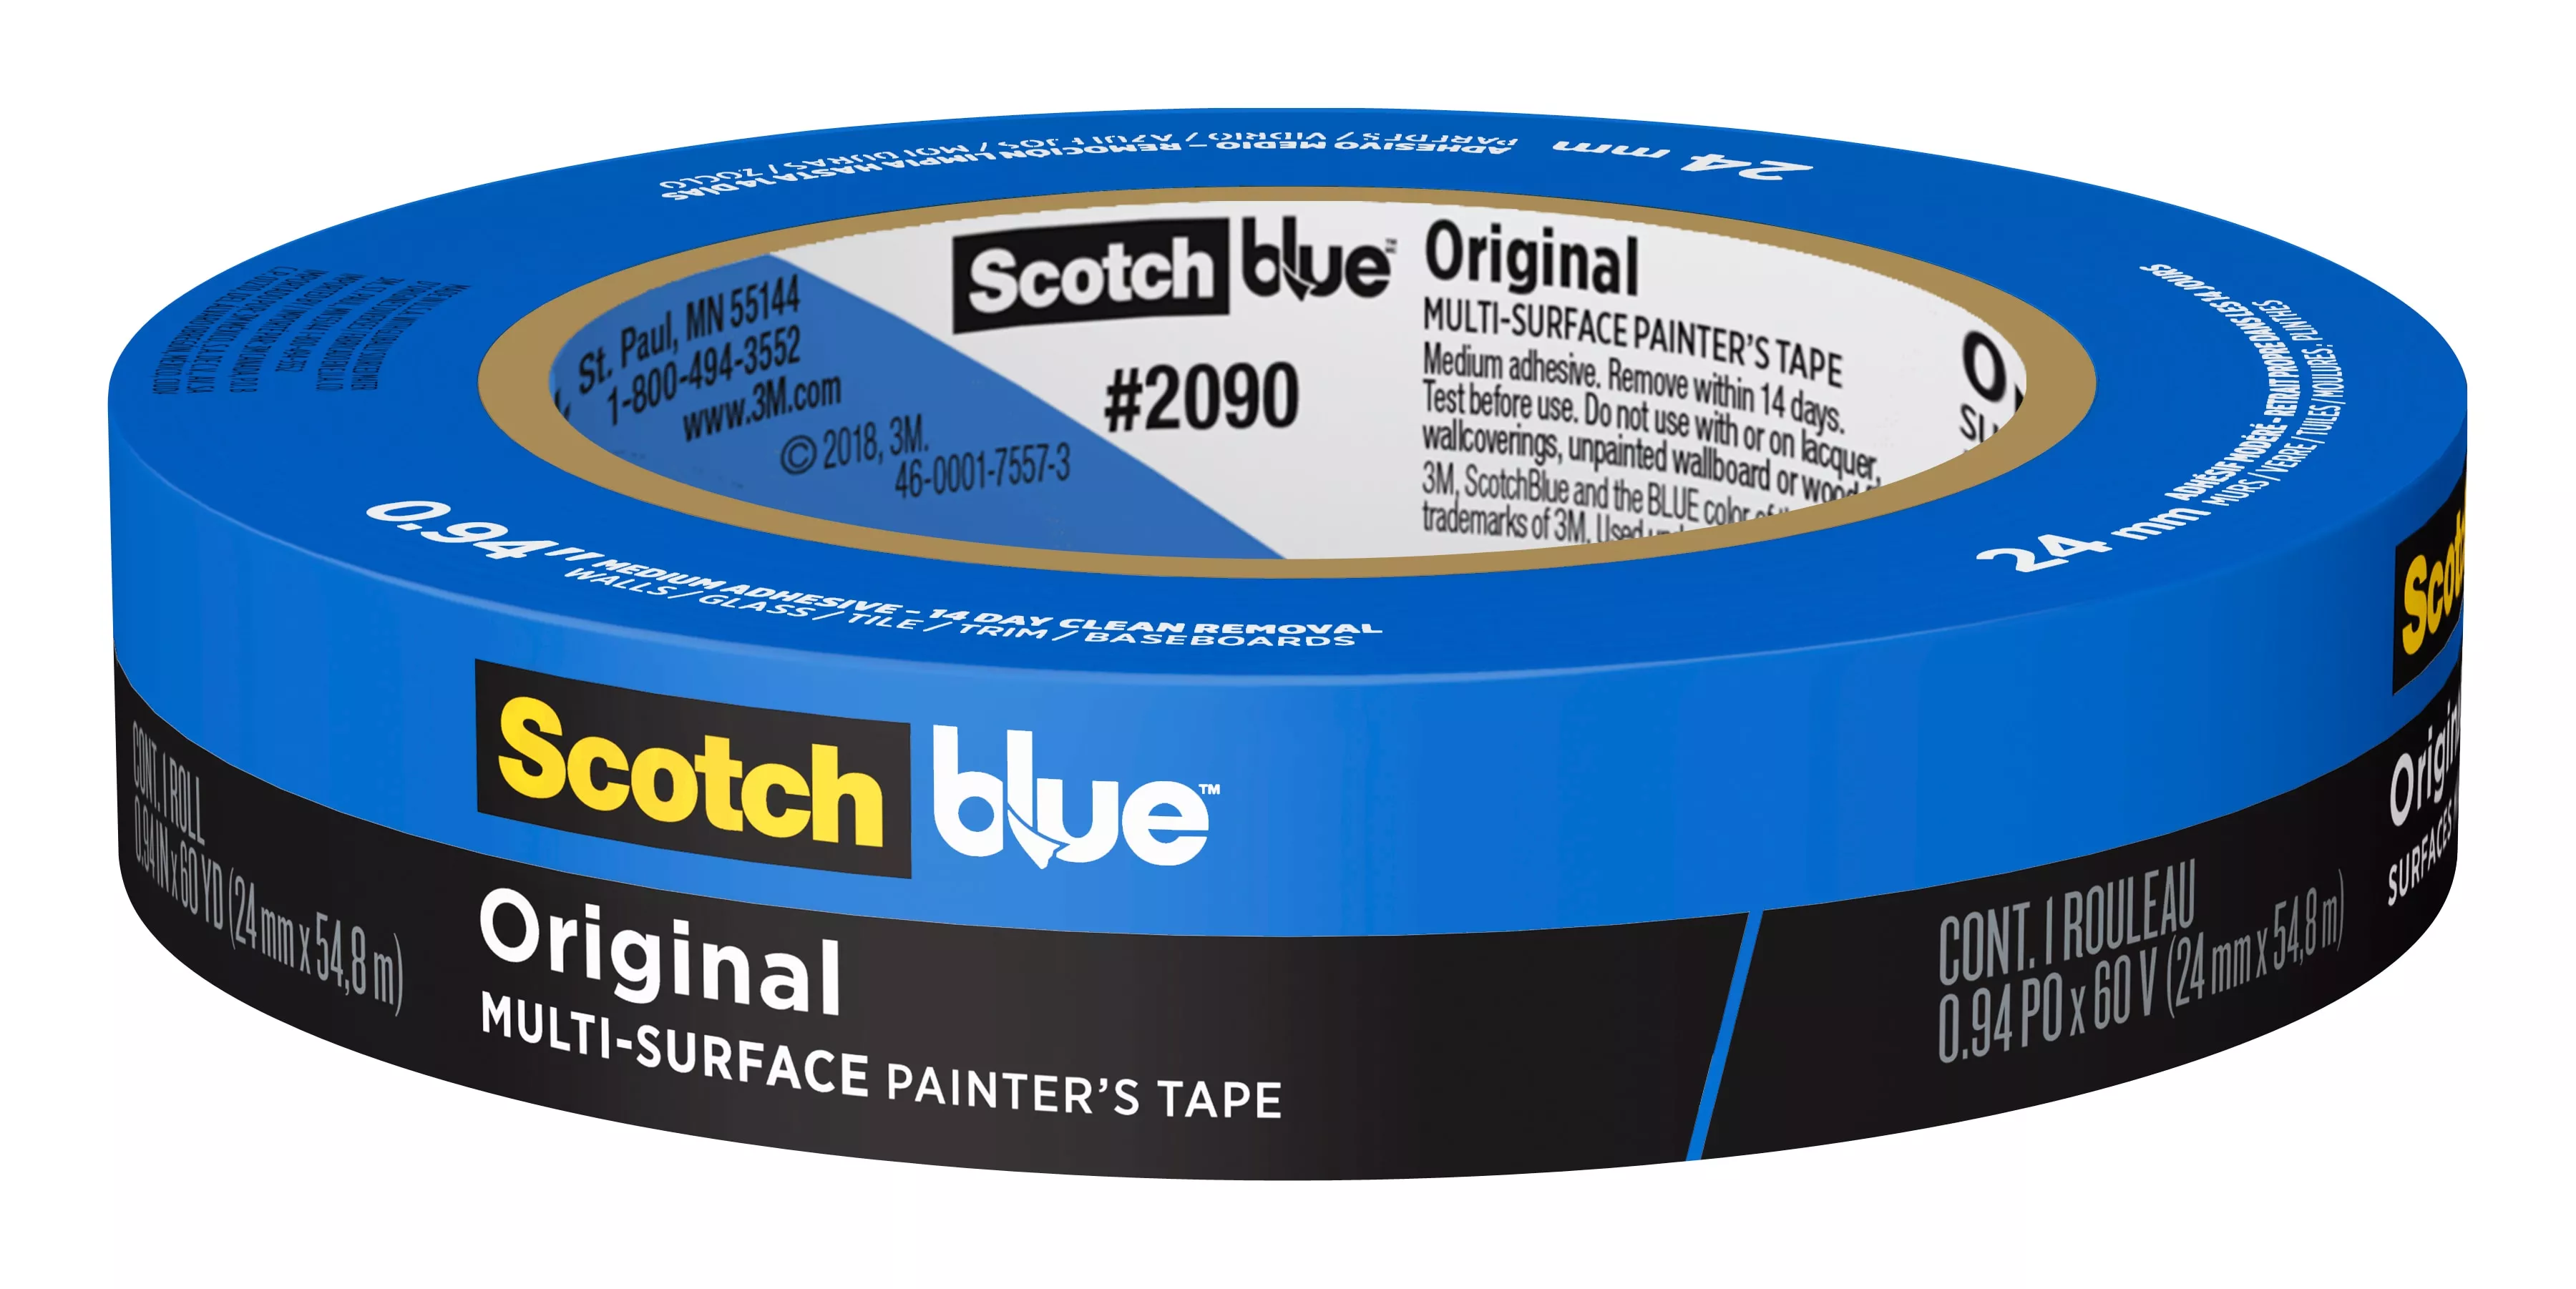 SKU 7100185210 | ScotchBlue™ Original Painter's Tape 2090-24NC